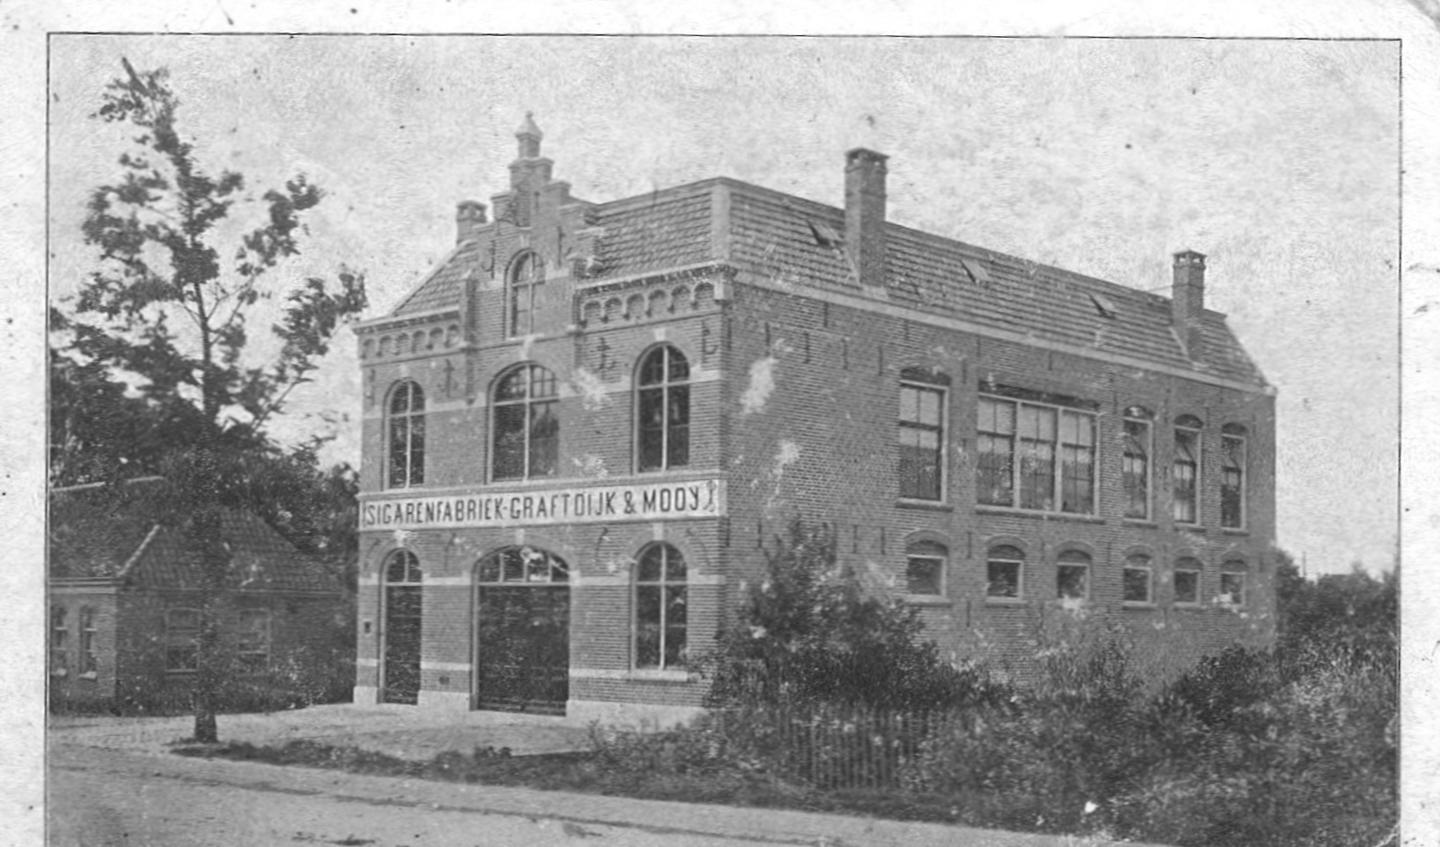 Ansichtkaart van het gebouw in 1911, toen nog in gebruik als sigarenfabriek